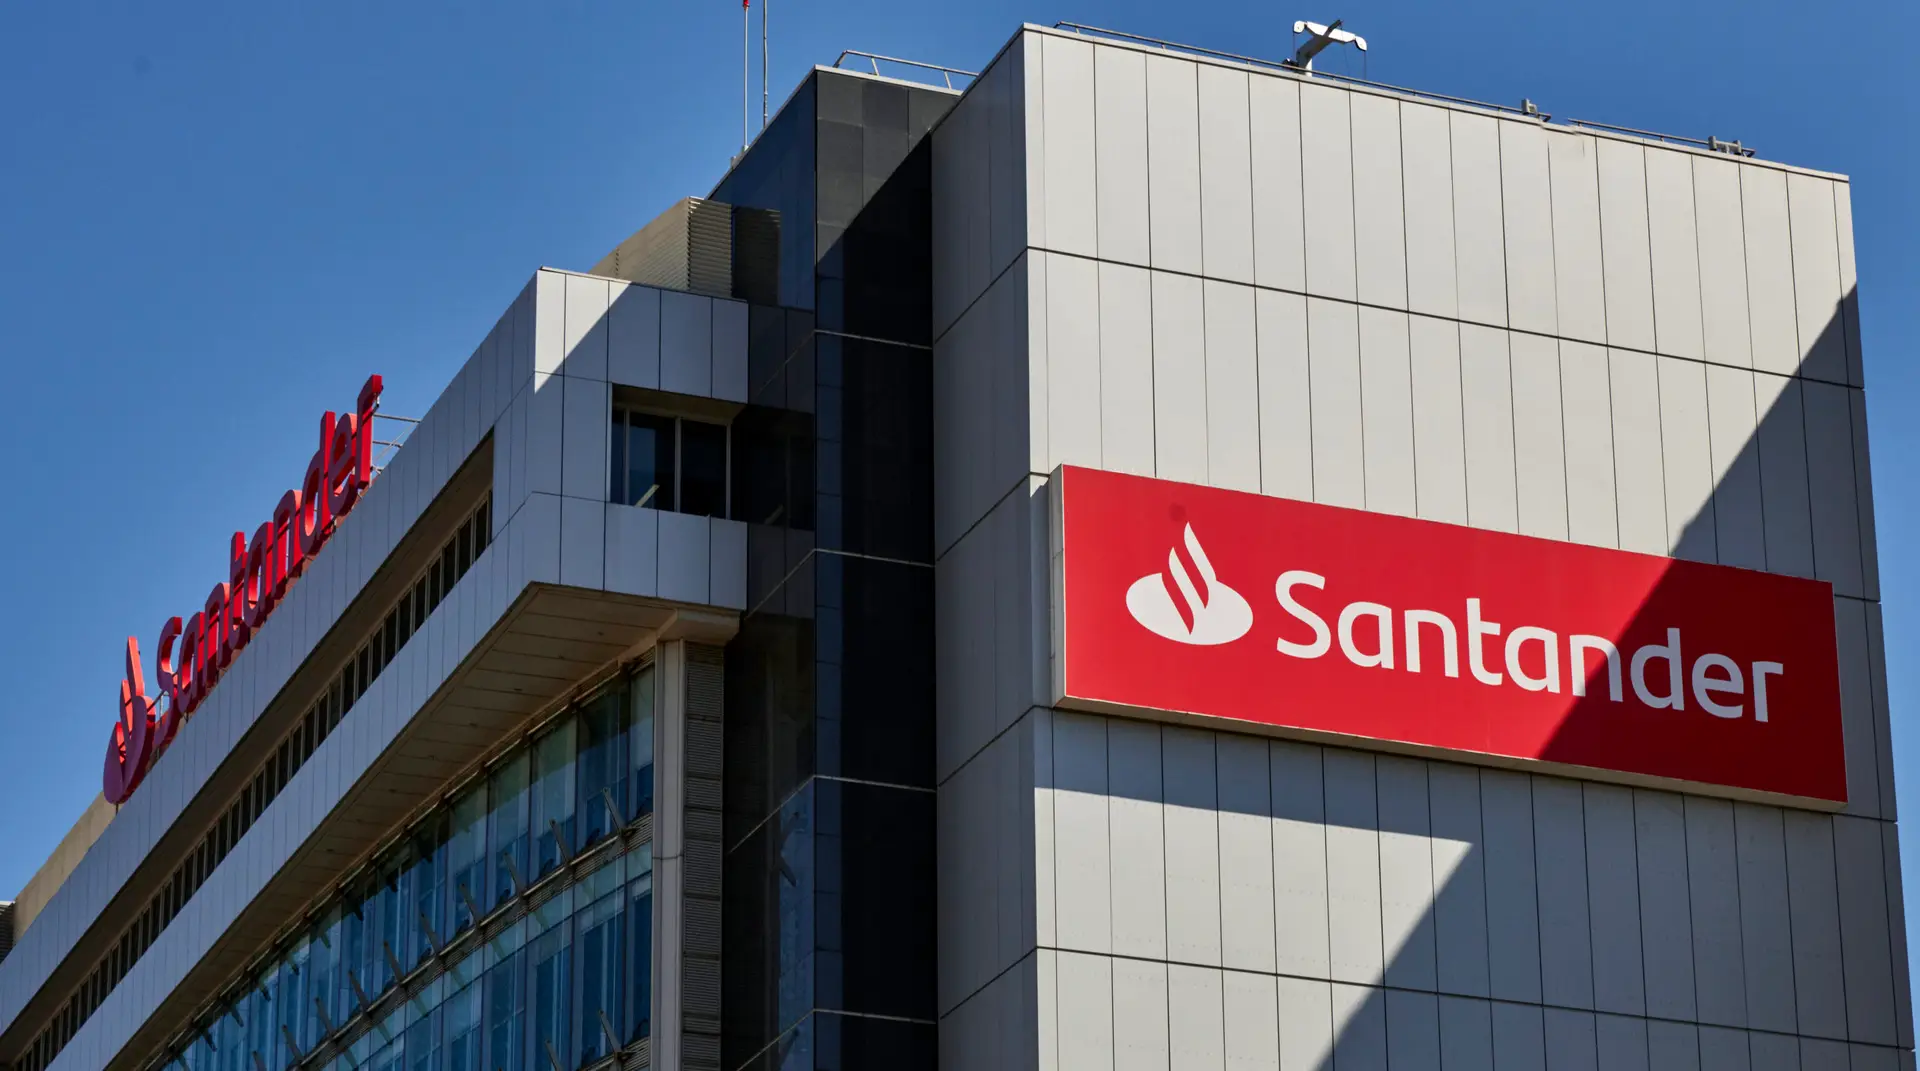 Santander paga este mês 750 euros a trabalhadores que ganham até 30 mil